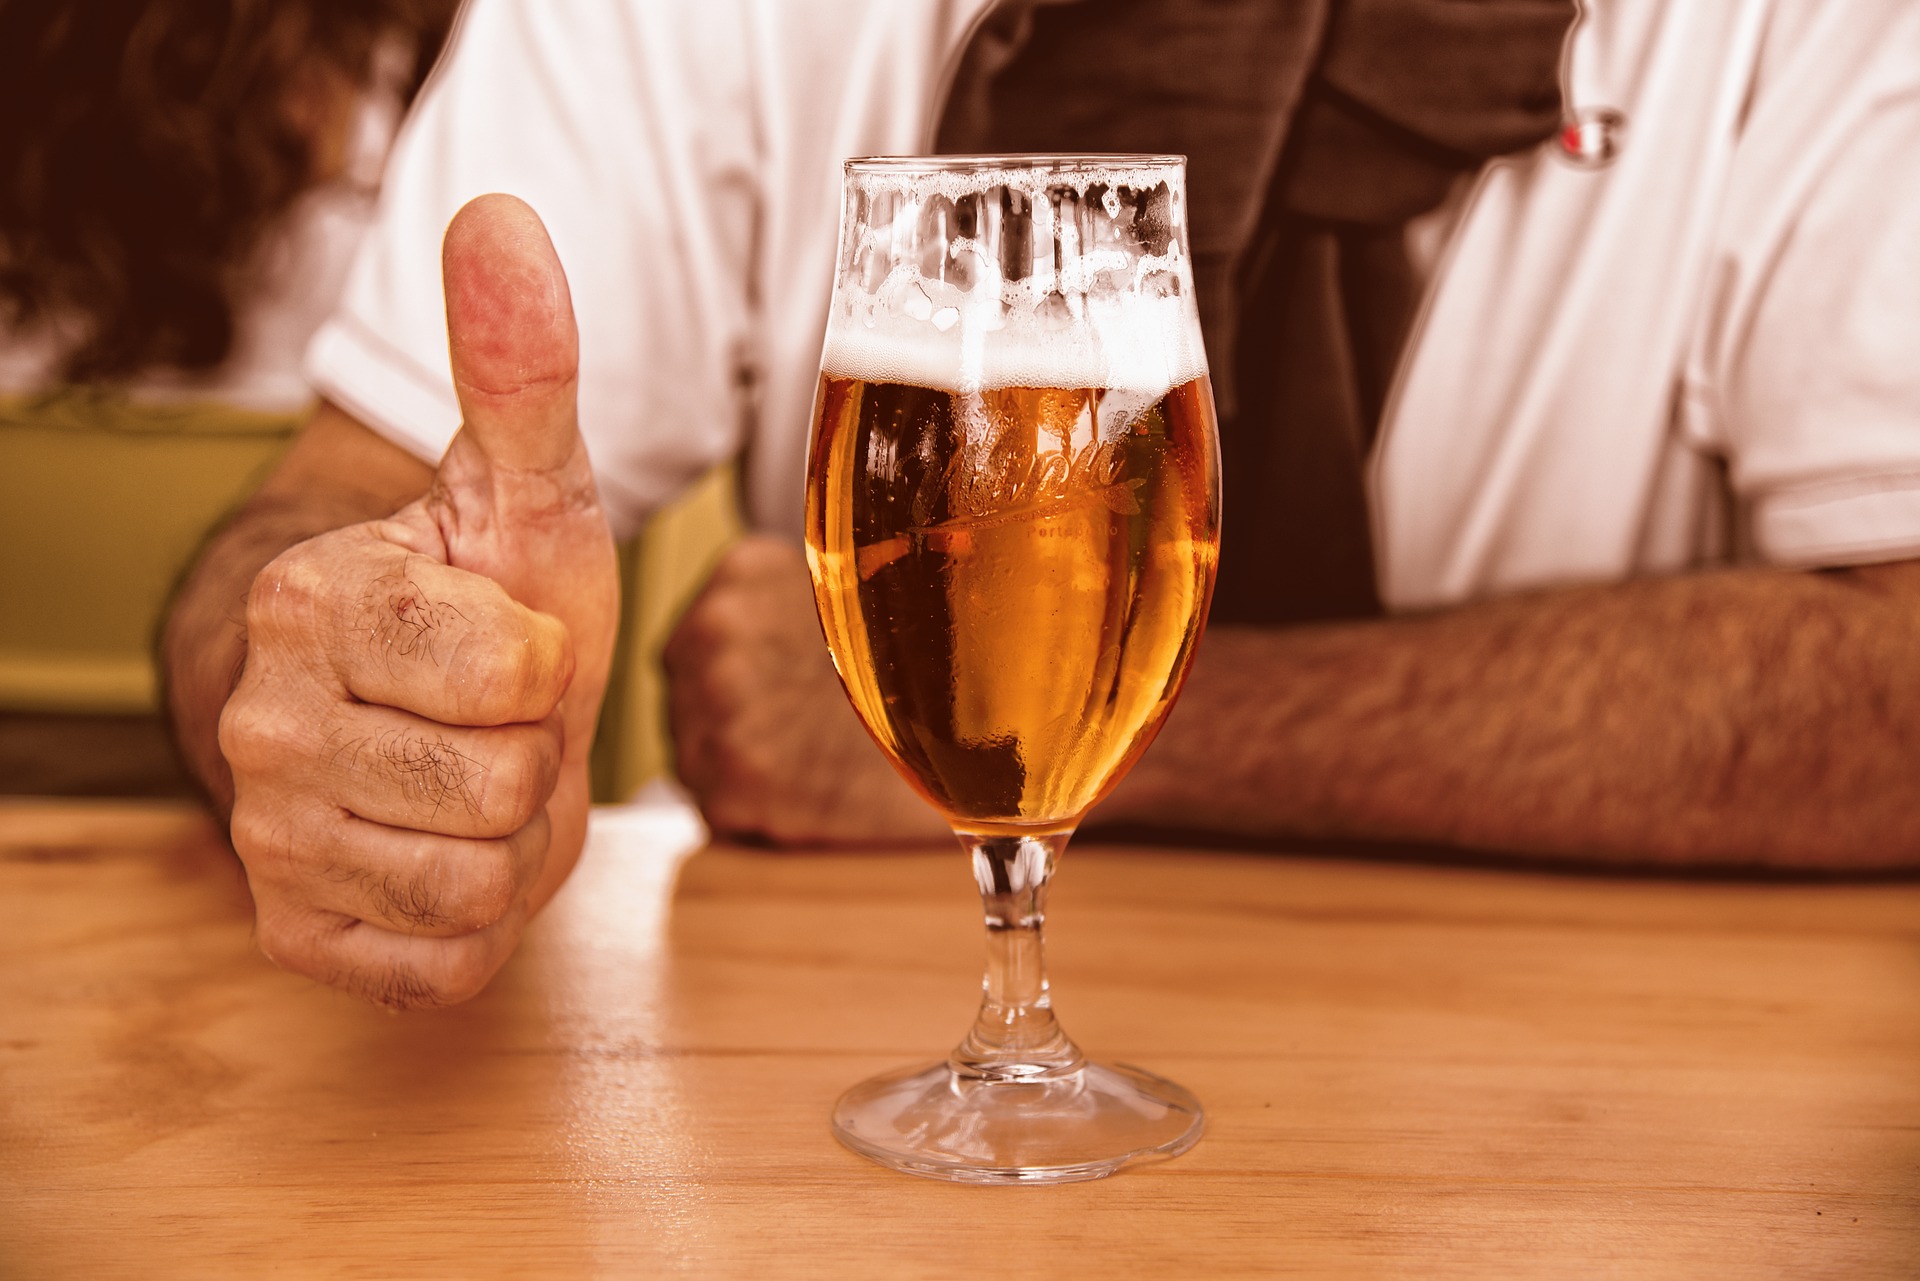 Les pères aussi devraient se tourner vers les bières sans alcool. © Mabel Amber, Pixabay